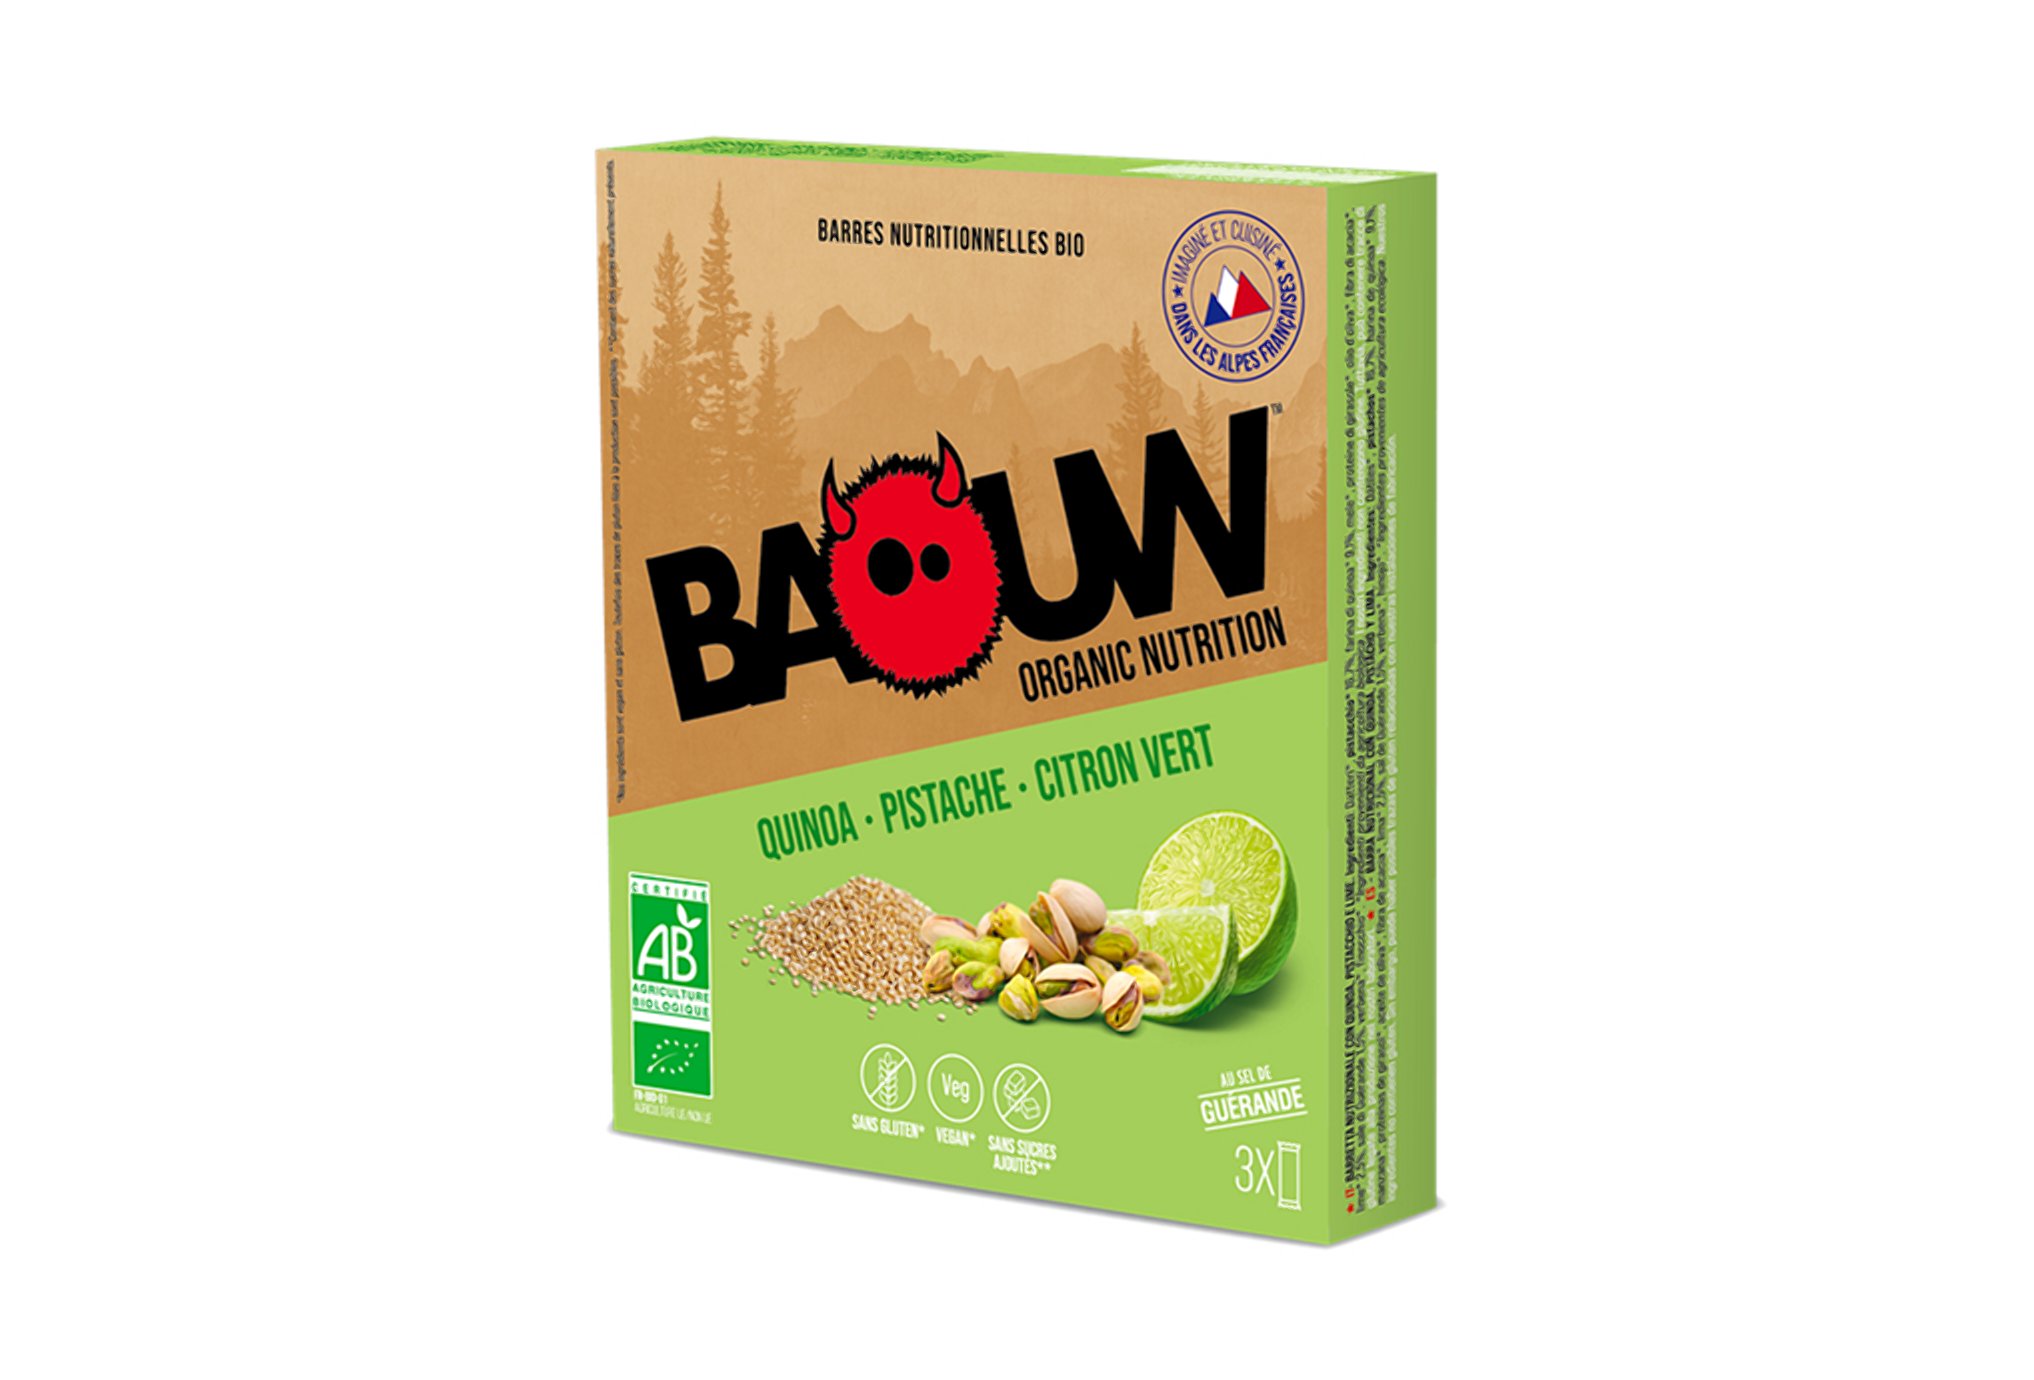 Baouw Étui 3 barres nutritionnelles bio - Quinoa - Pistache - Citron vert Diététique Barres